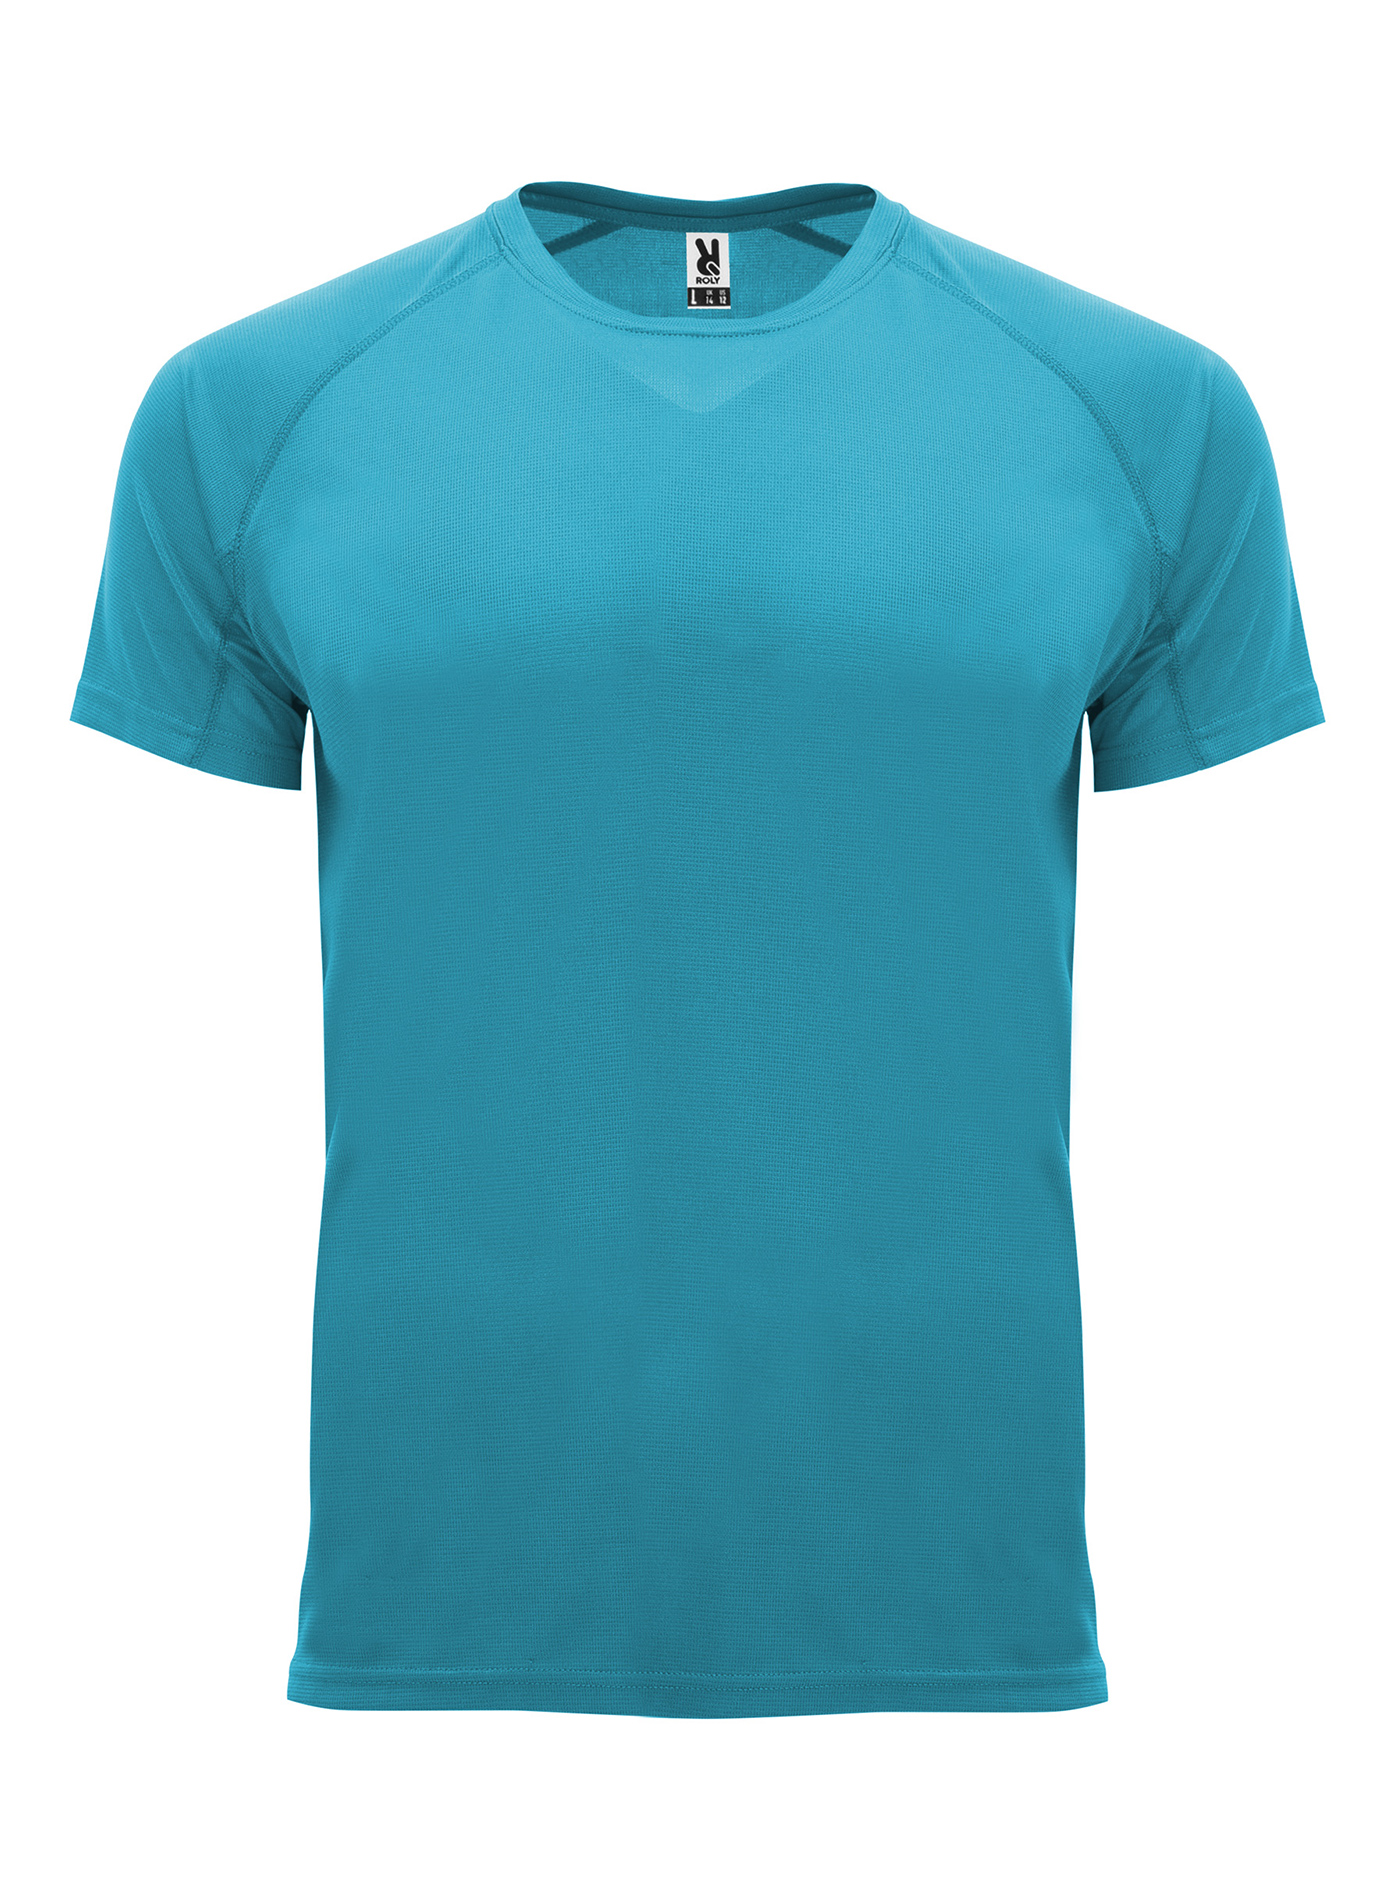 Pánské sportovní tričko Roly Bahrain - Tyrkysově modrá L